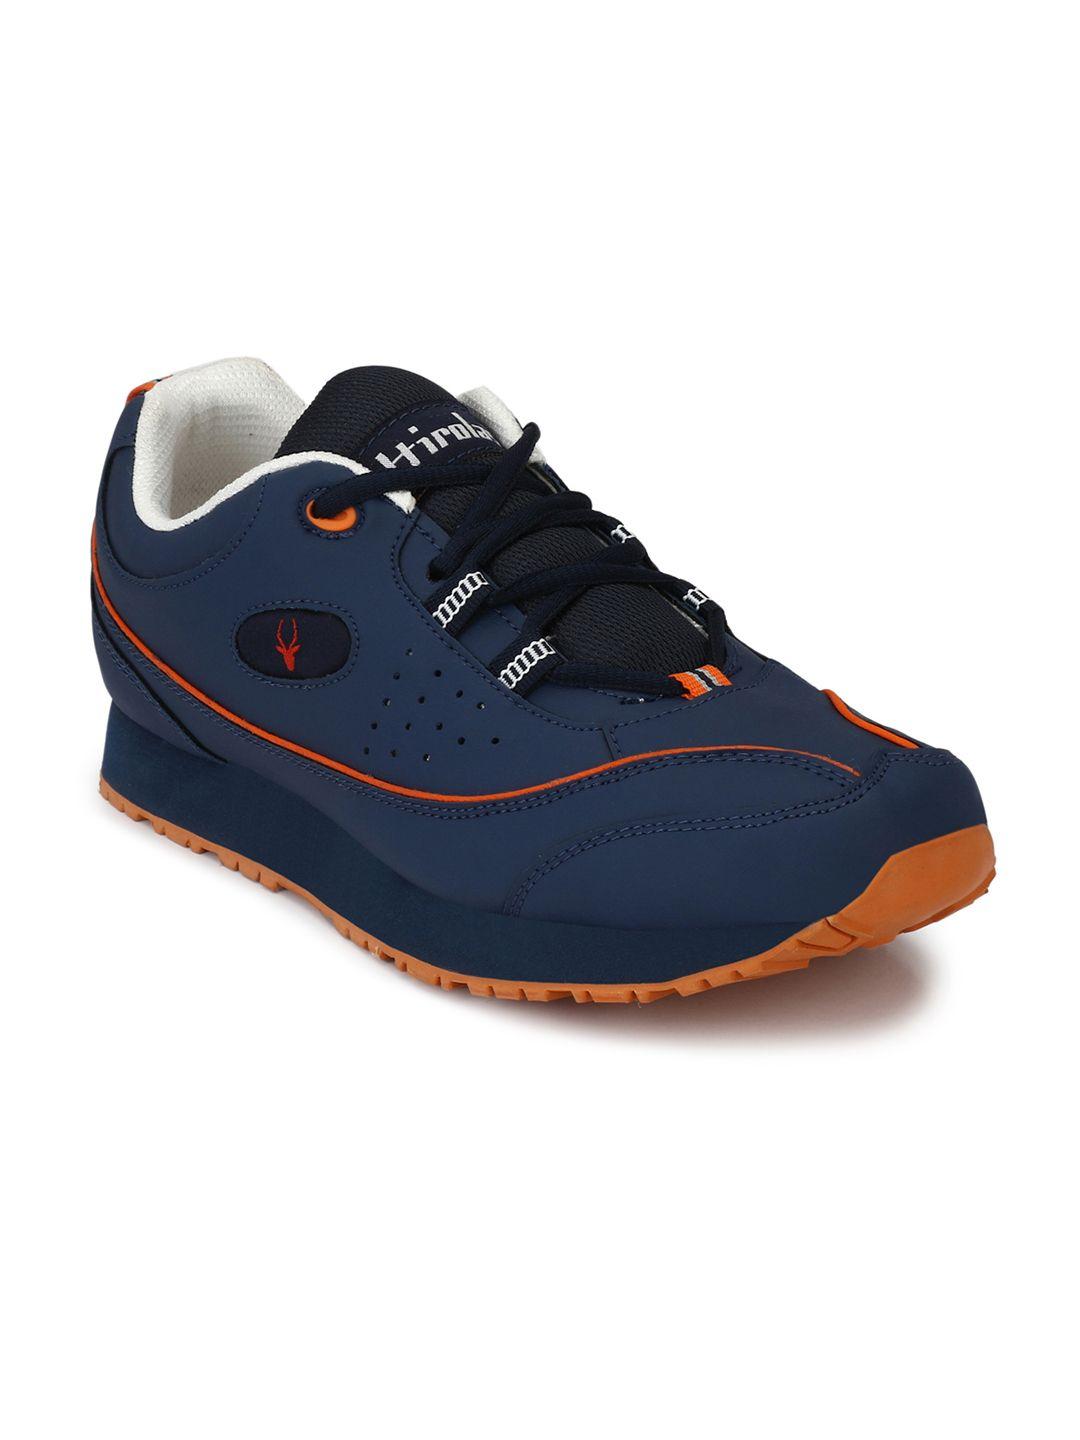 hirolas men navy blue running shoes